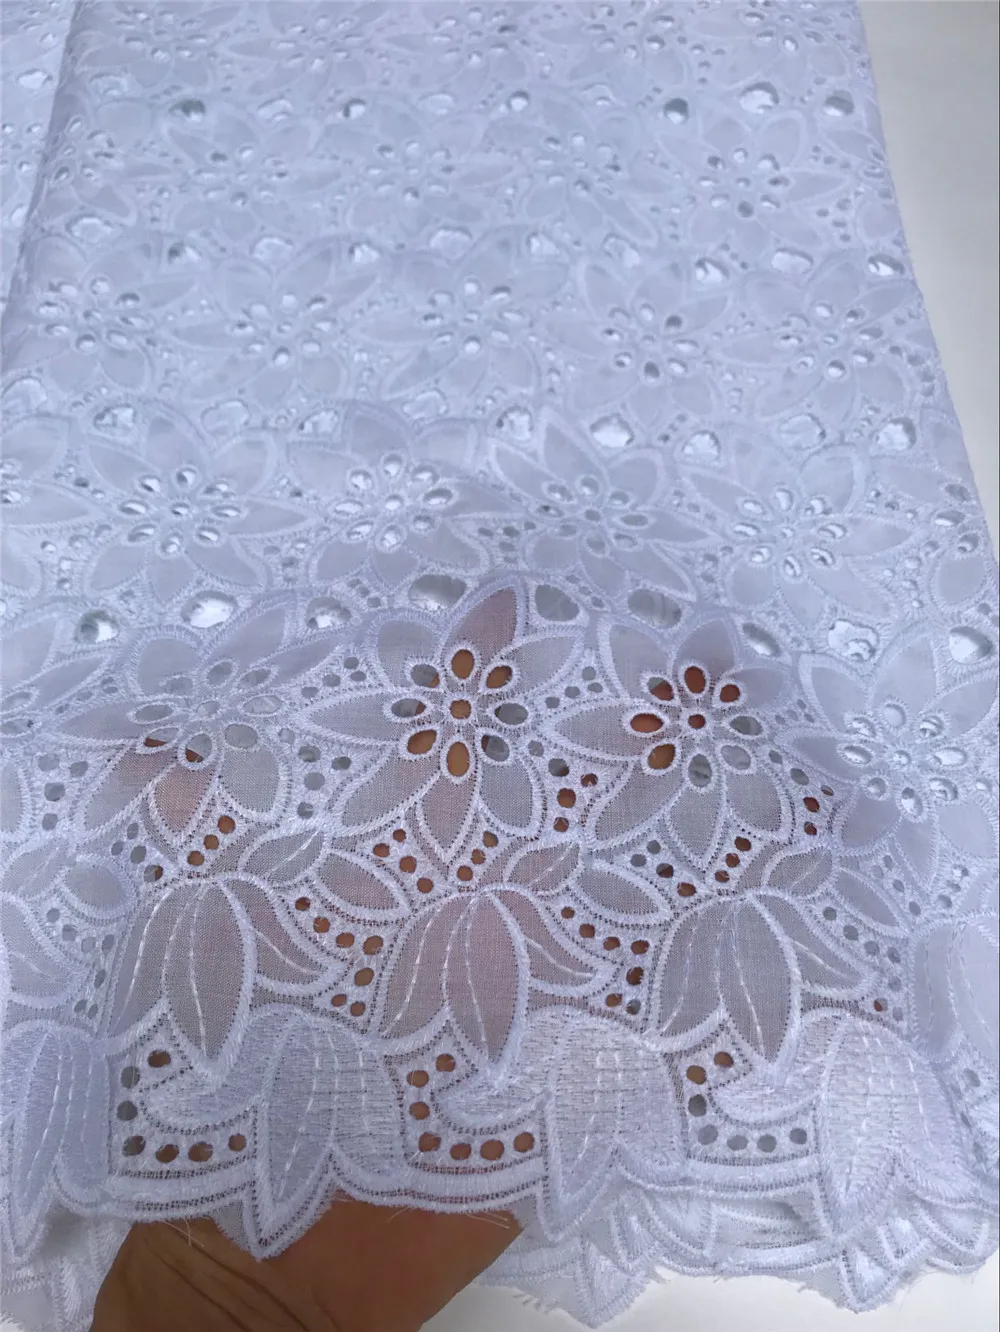 Швейцарская вуаль кружева в швейцарской последние Африканские кружева детские ткани хлопок кружева белая ткань для dress5yard/lo5815